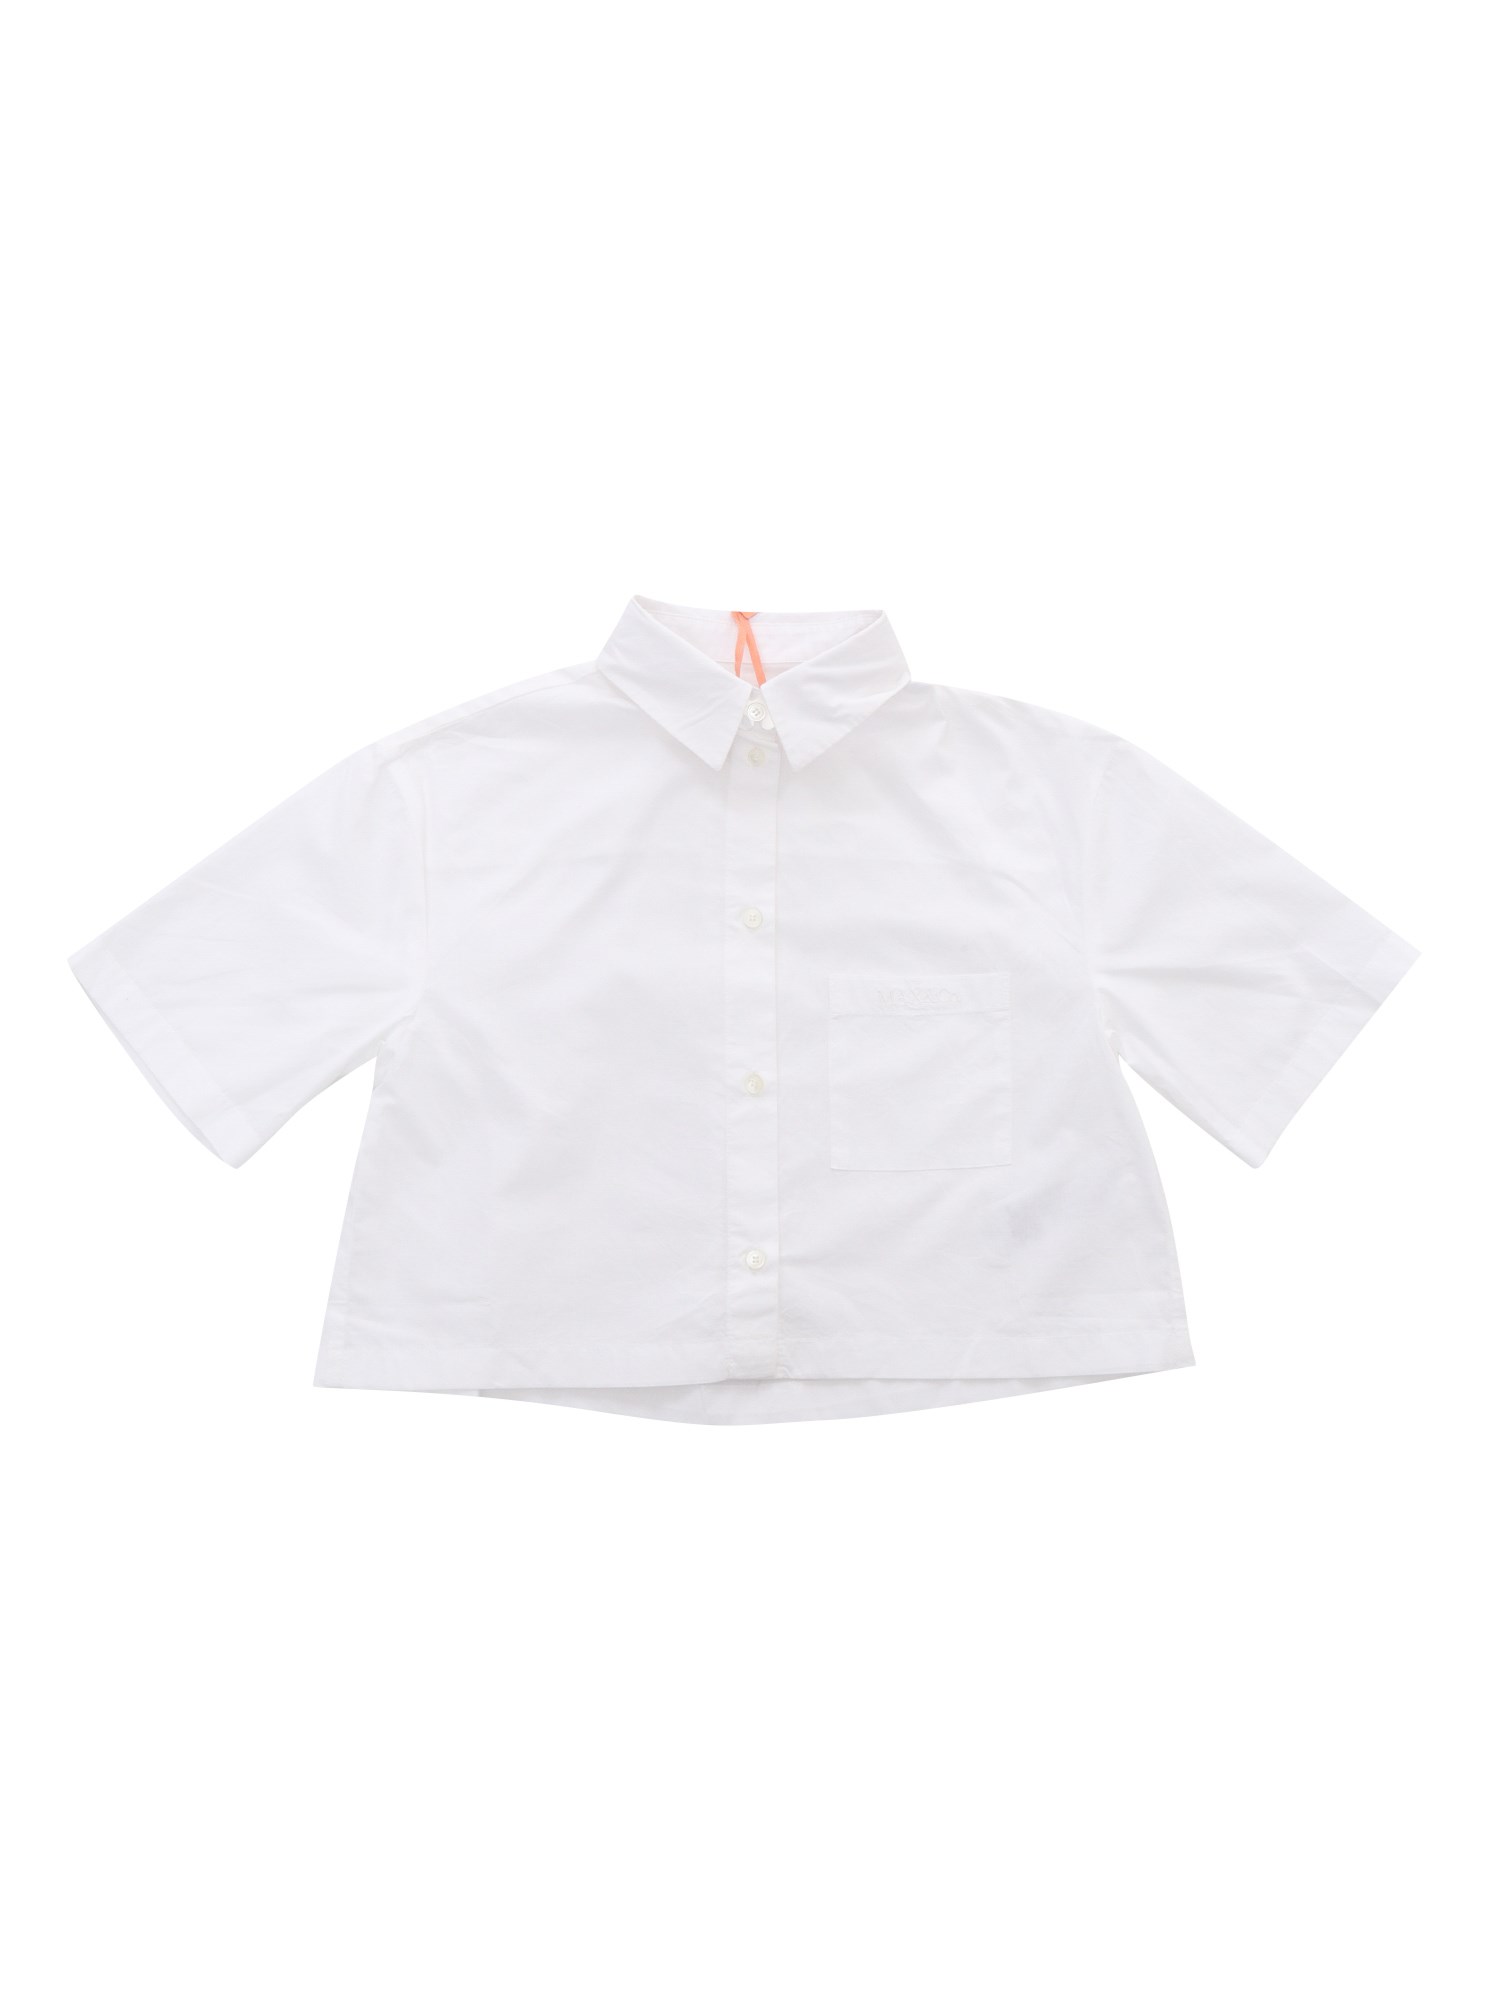 Max & Co White Shirt